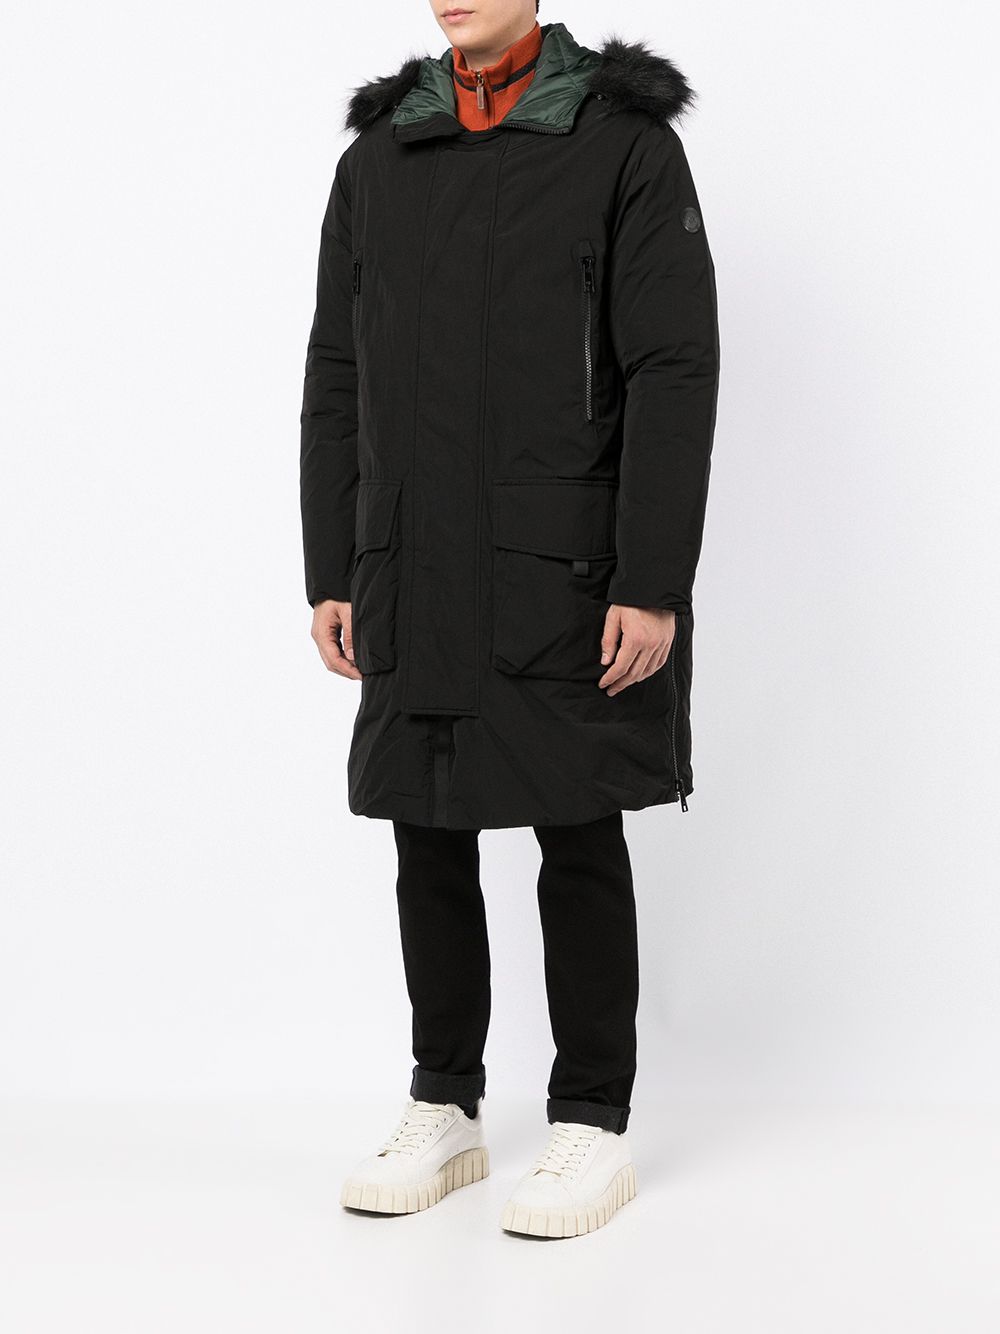 фото Armani exchange пальто с капюшоном и искусственным мехом